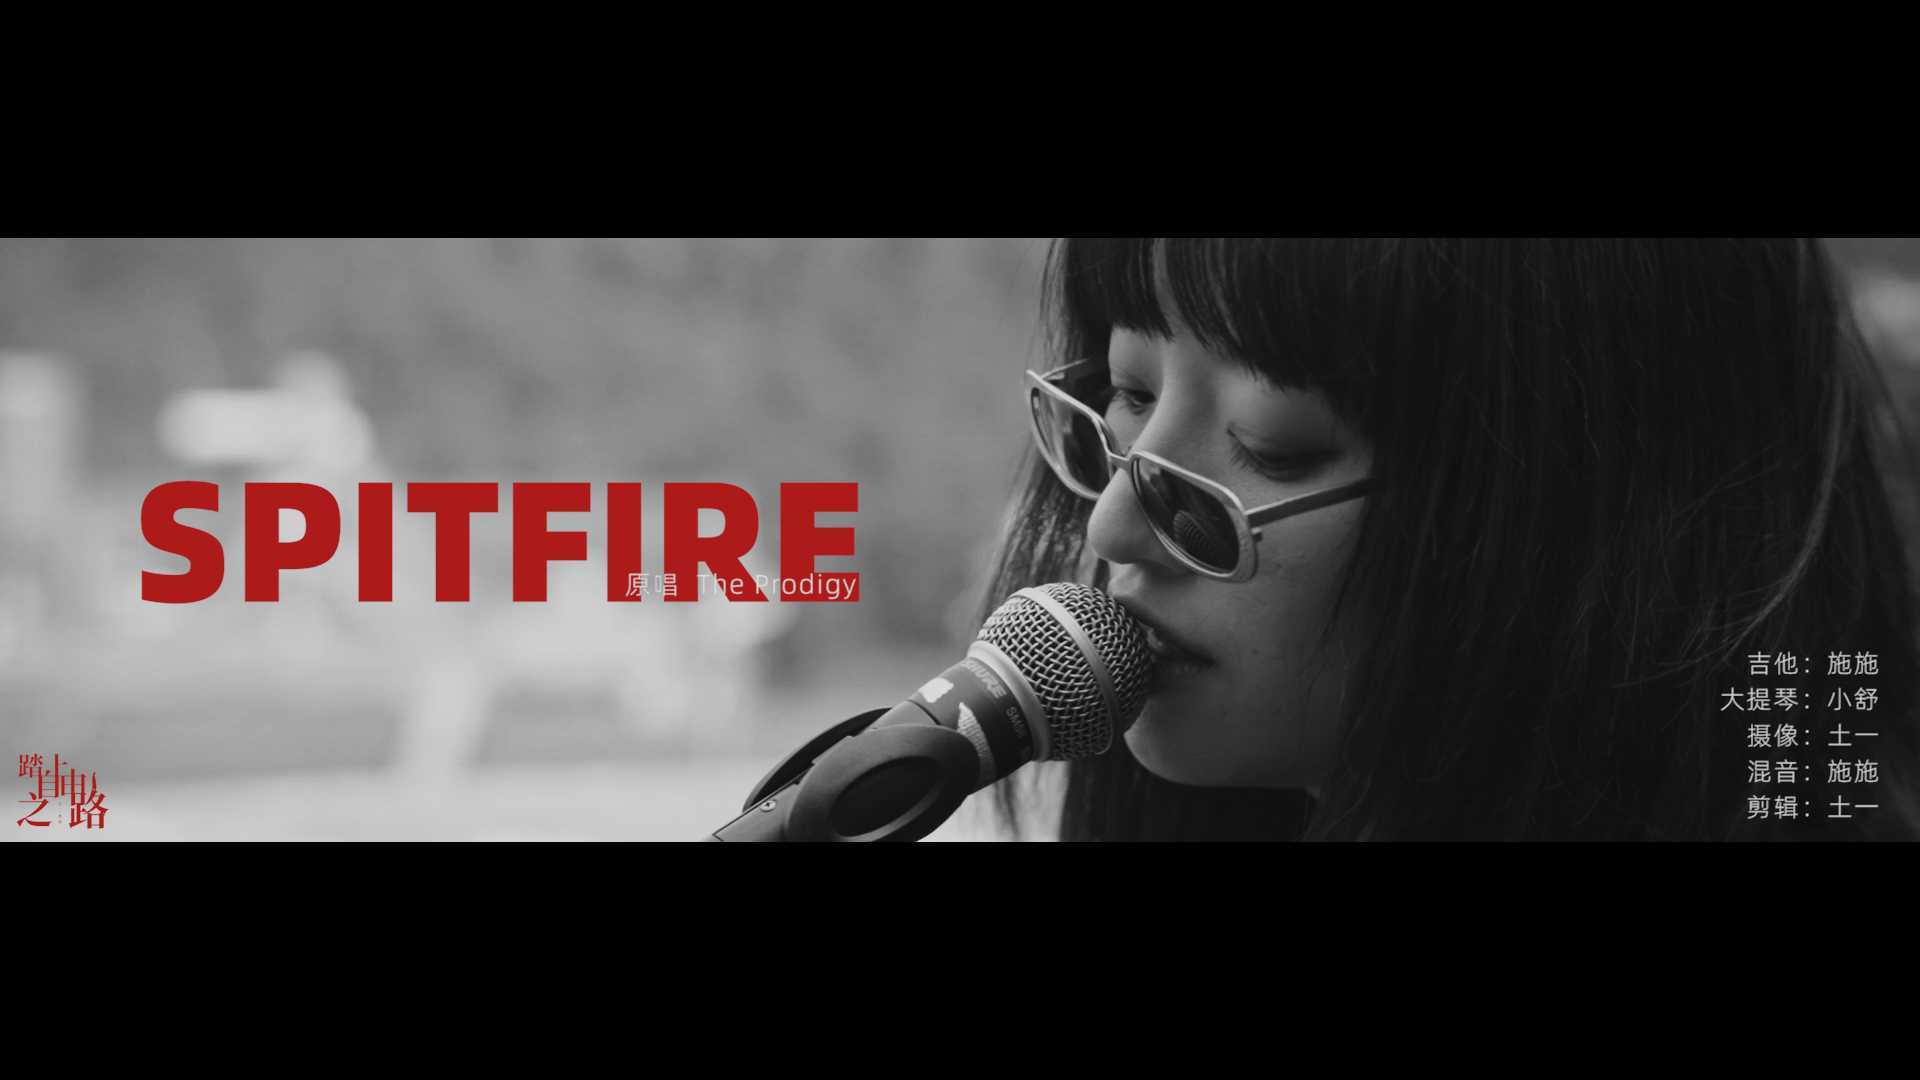 快闪合作 摇滚MV【SPITFIRE】 踏上自由之路 × SHI × SHU